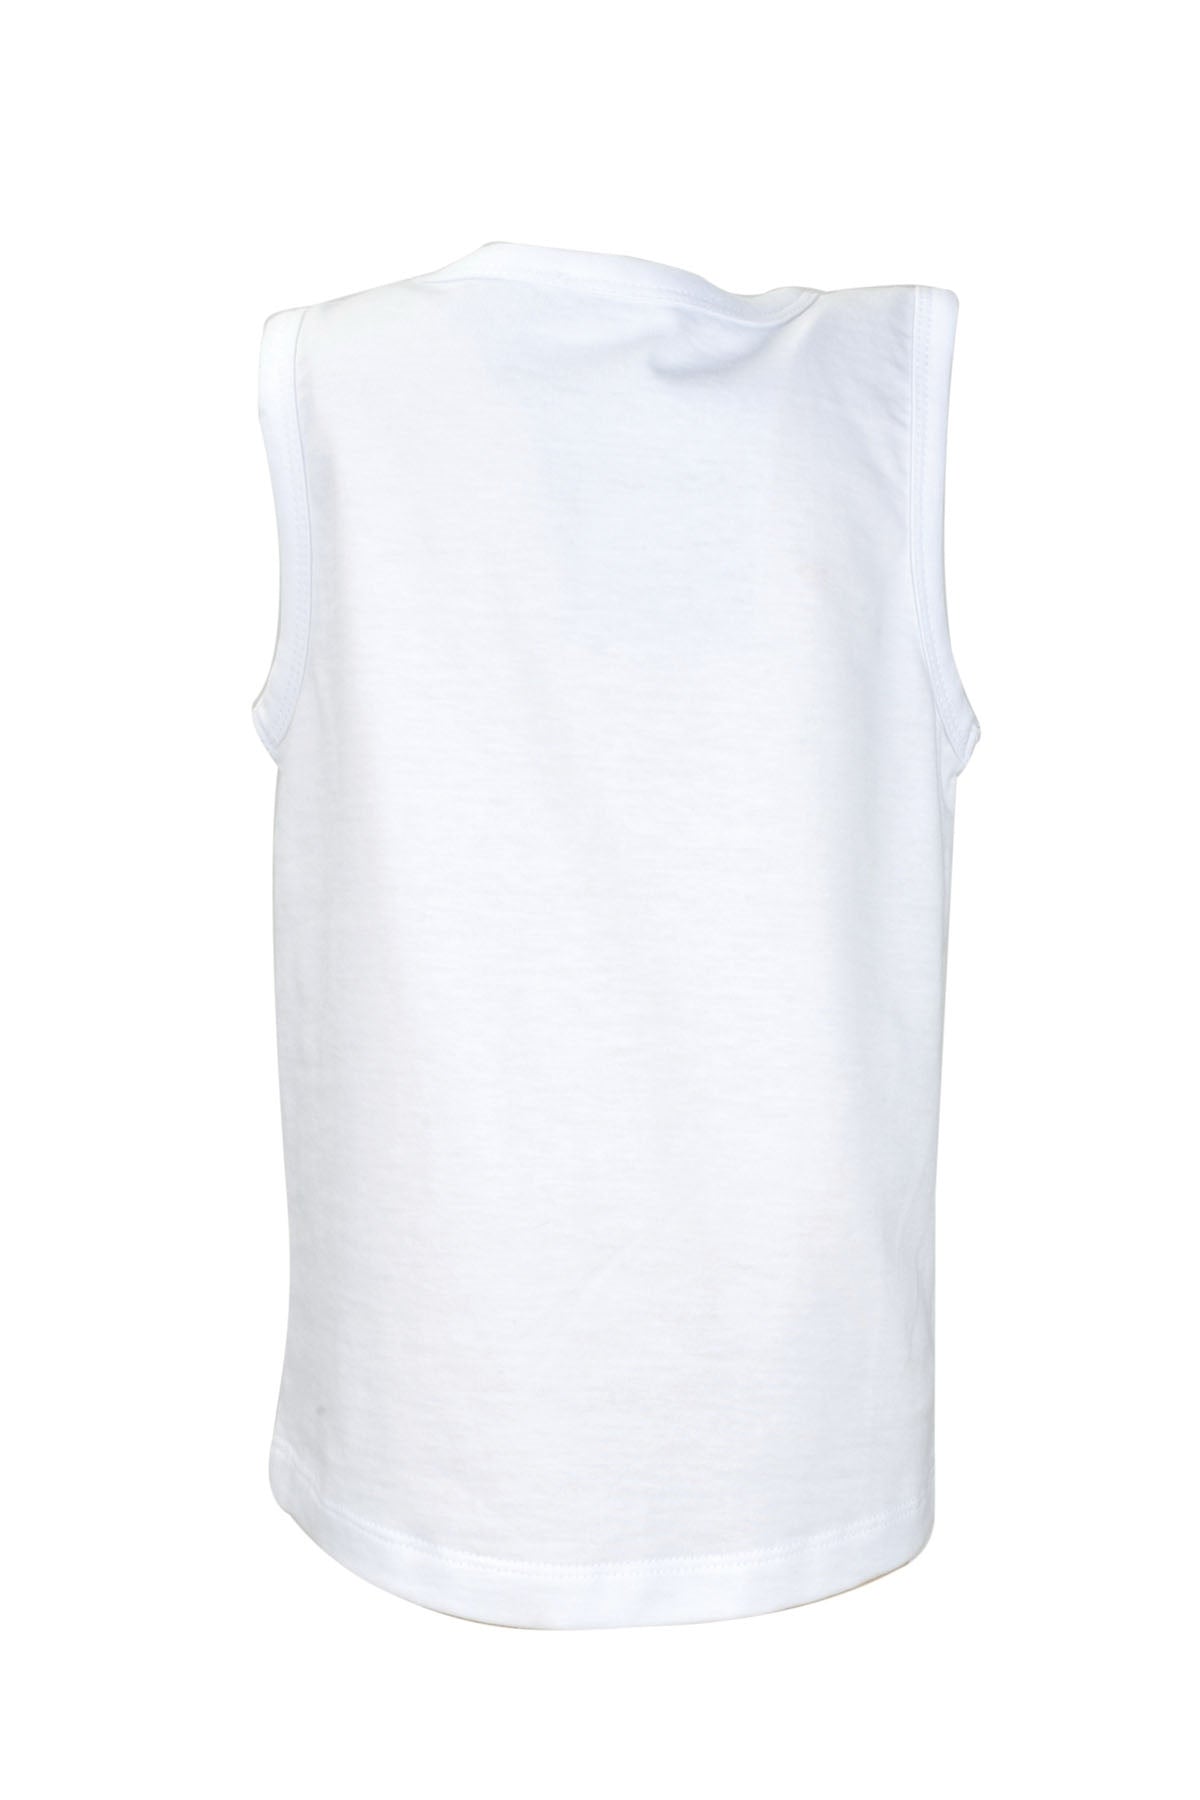 Erkek Bebek Beyaz Baskılı Kolsuz T-Shirt (9ay-4yaş)-1